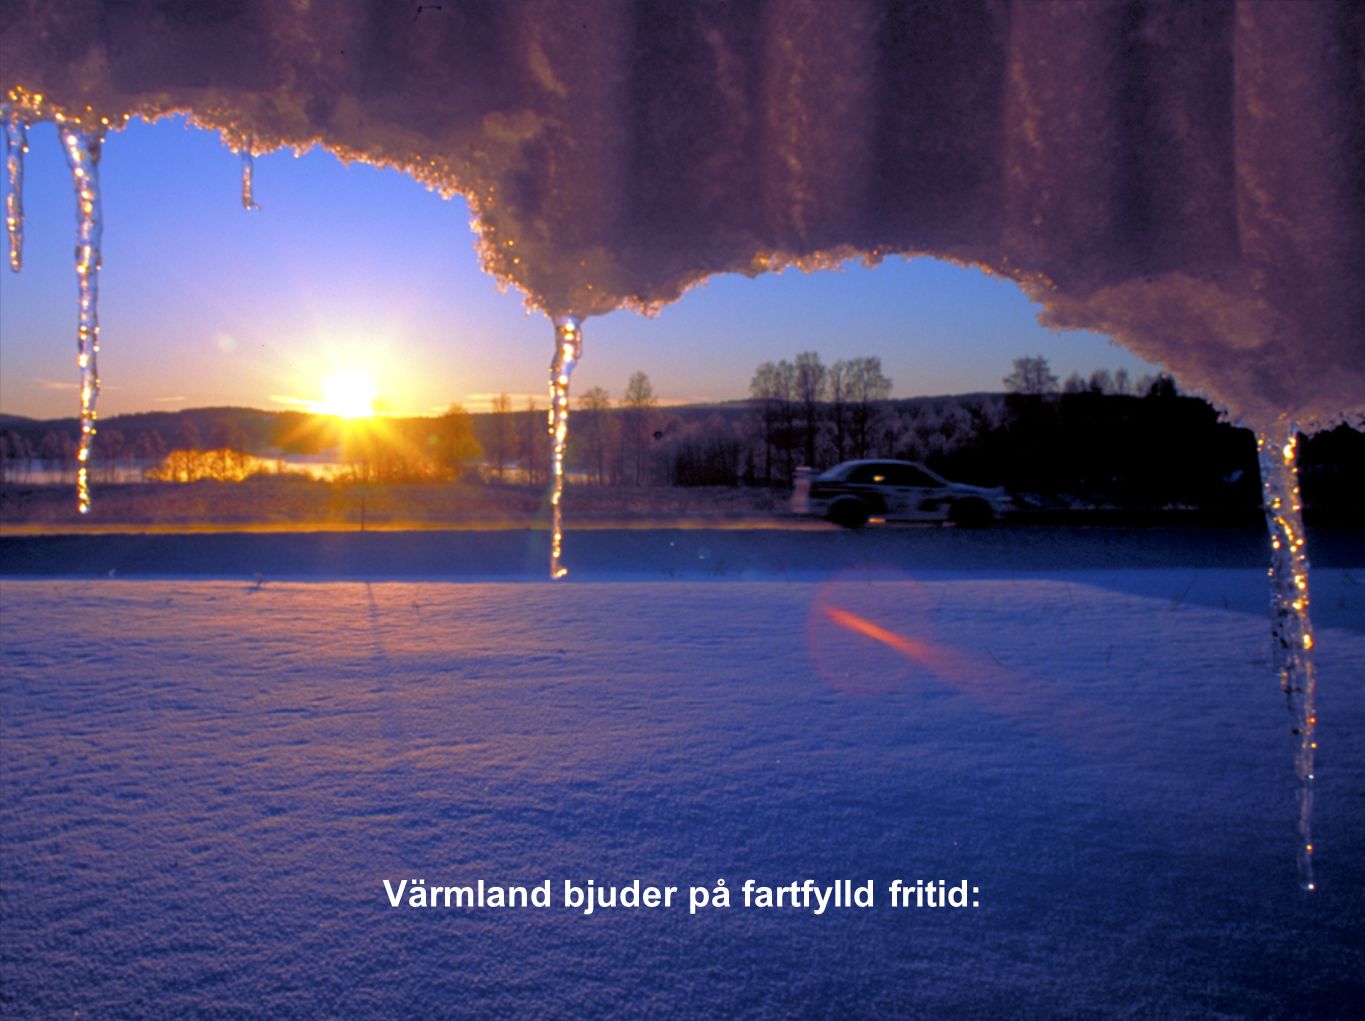 Värmland bjuder på fartfylld fritid: